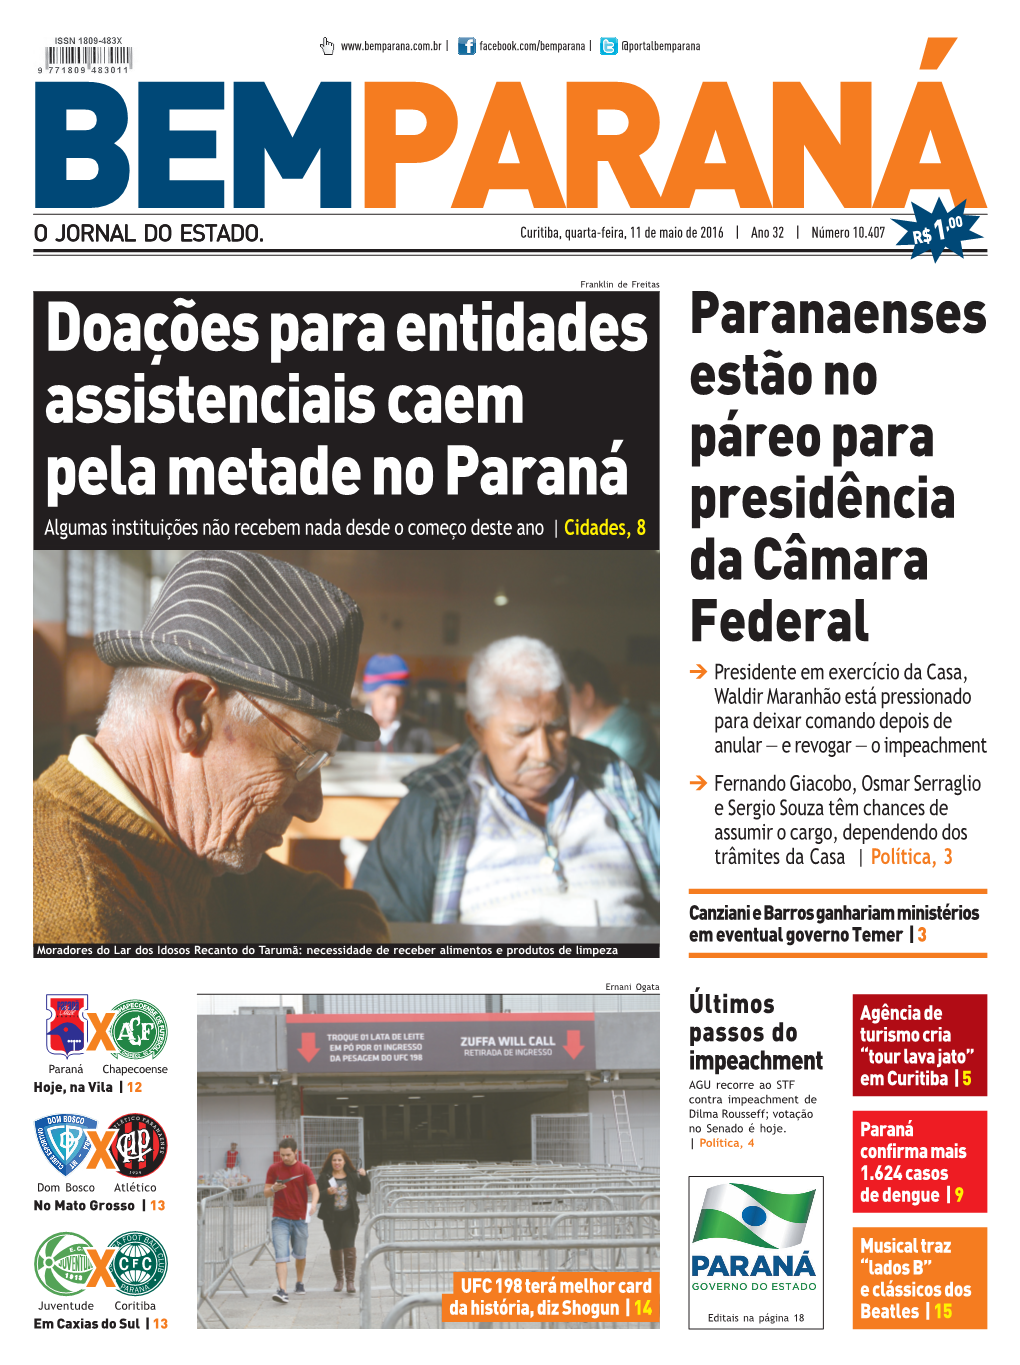 Doações Para Entidades Assistenciais Caem Pela Metade No Paraná